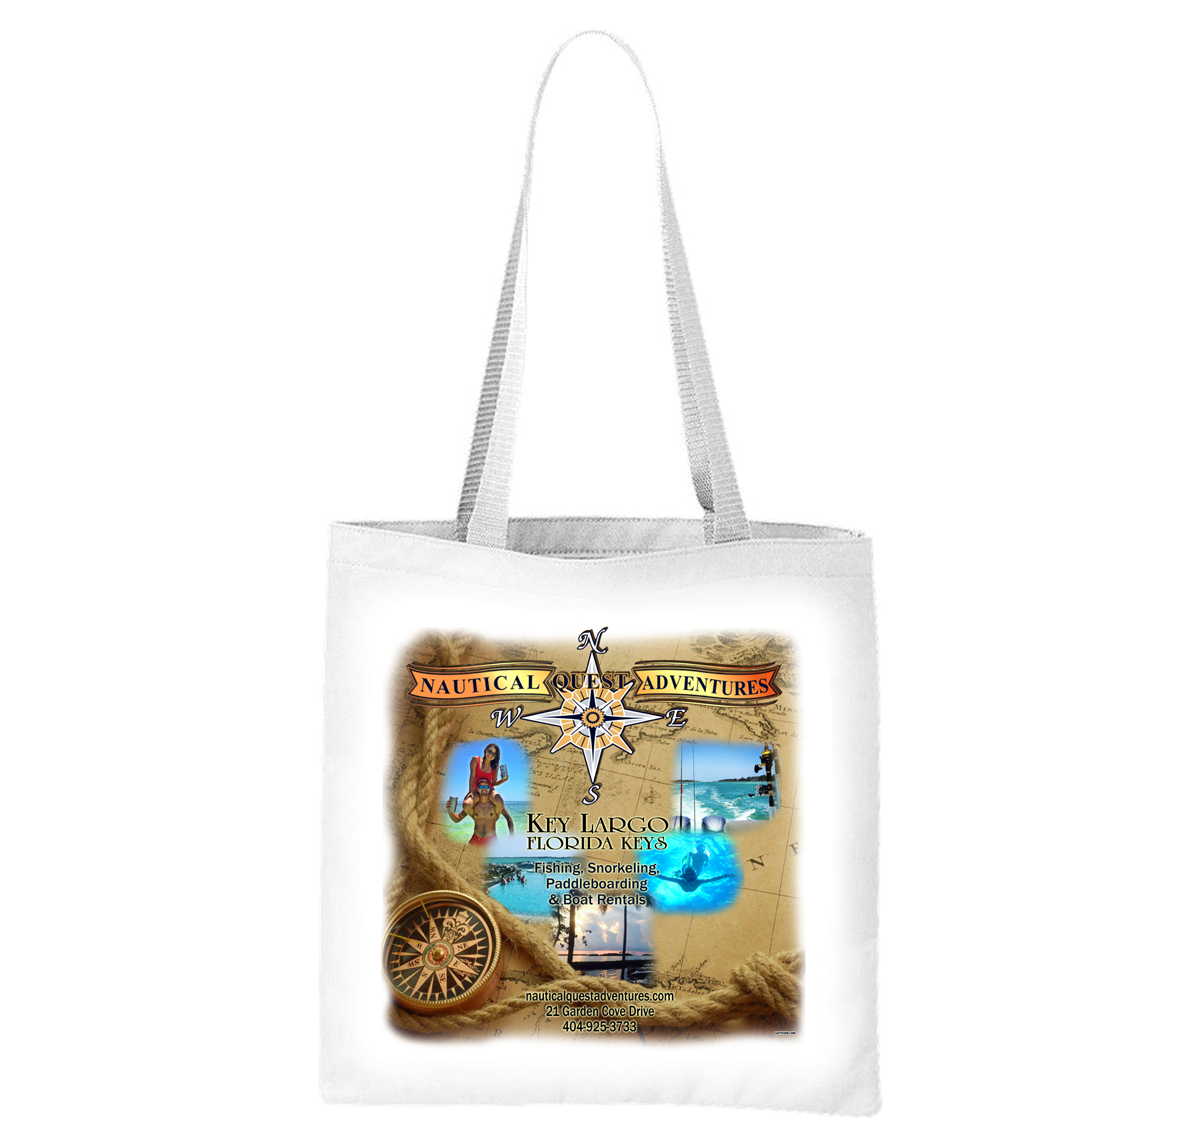 Nautical Quest Adventures Liberty Bag